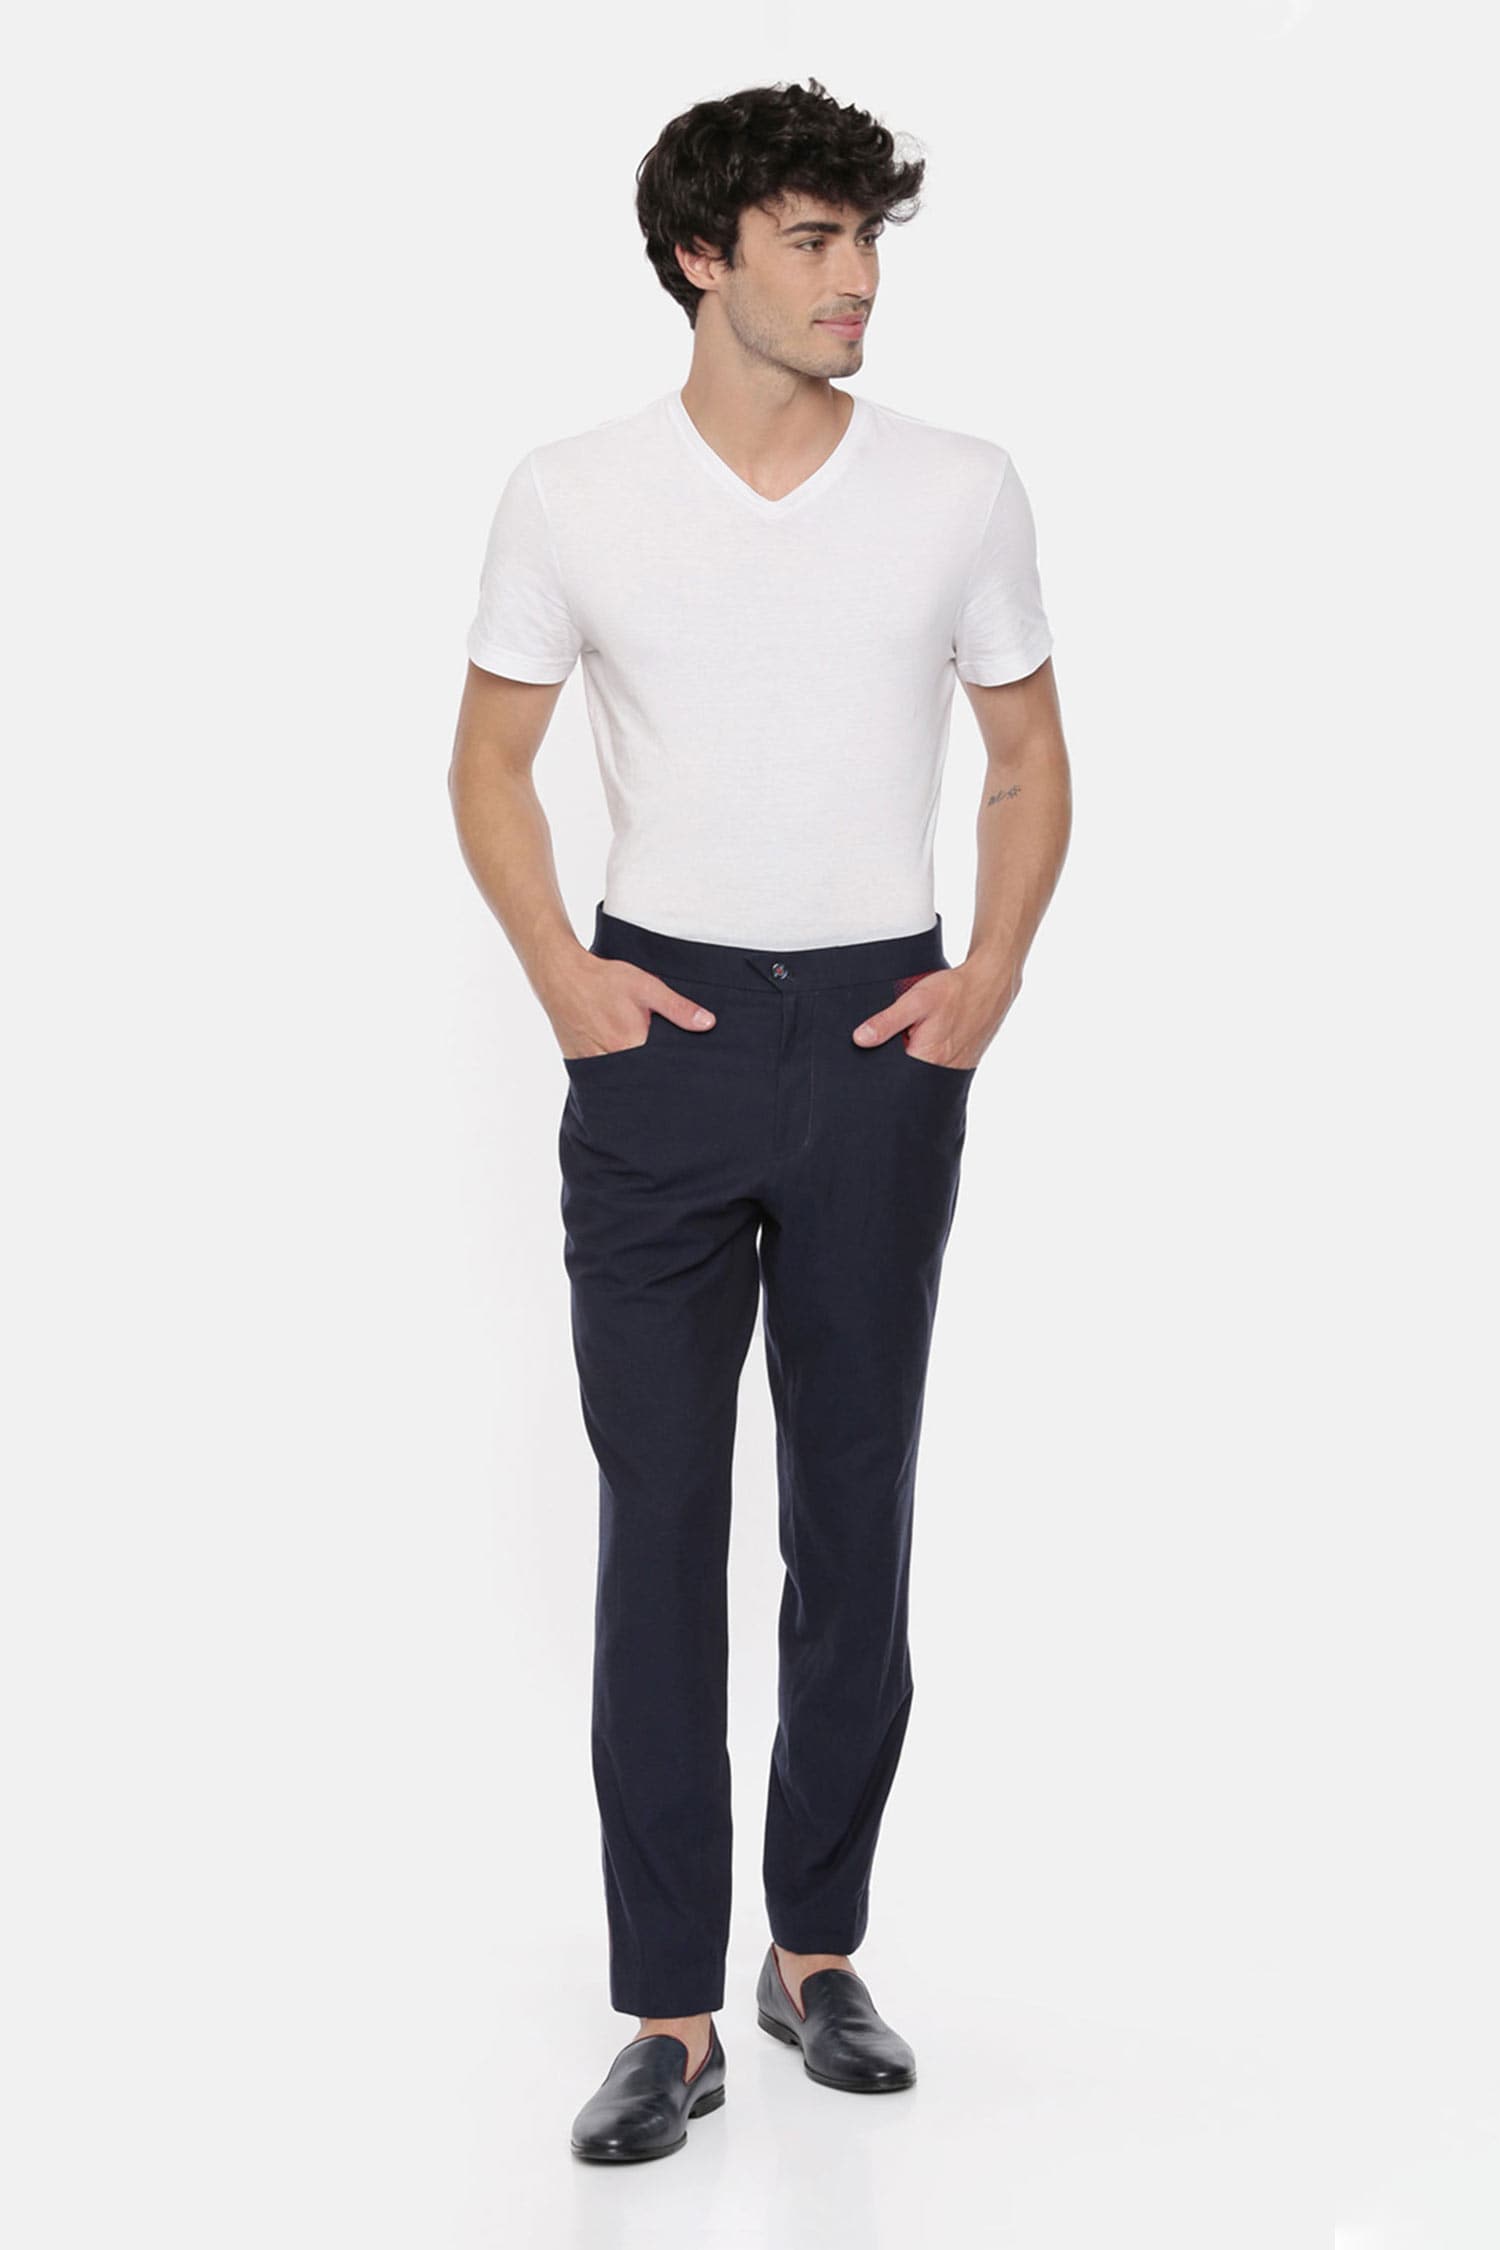 Formal Classy Shirt Trouser set for Men  Evilato Online Shopping